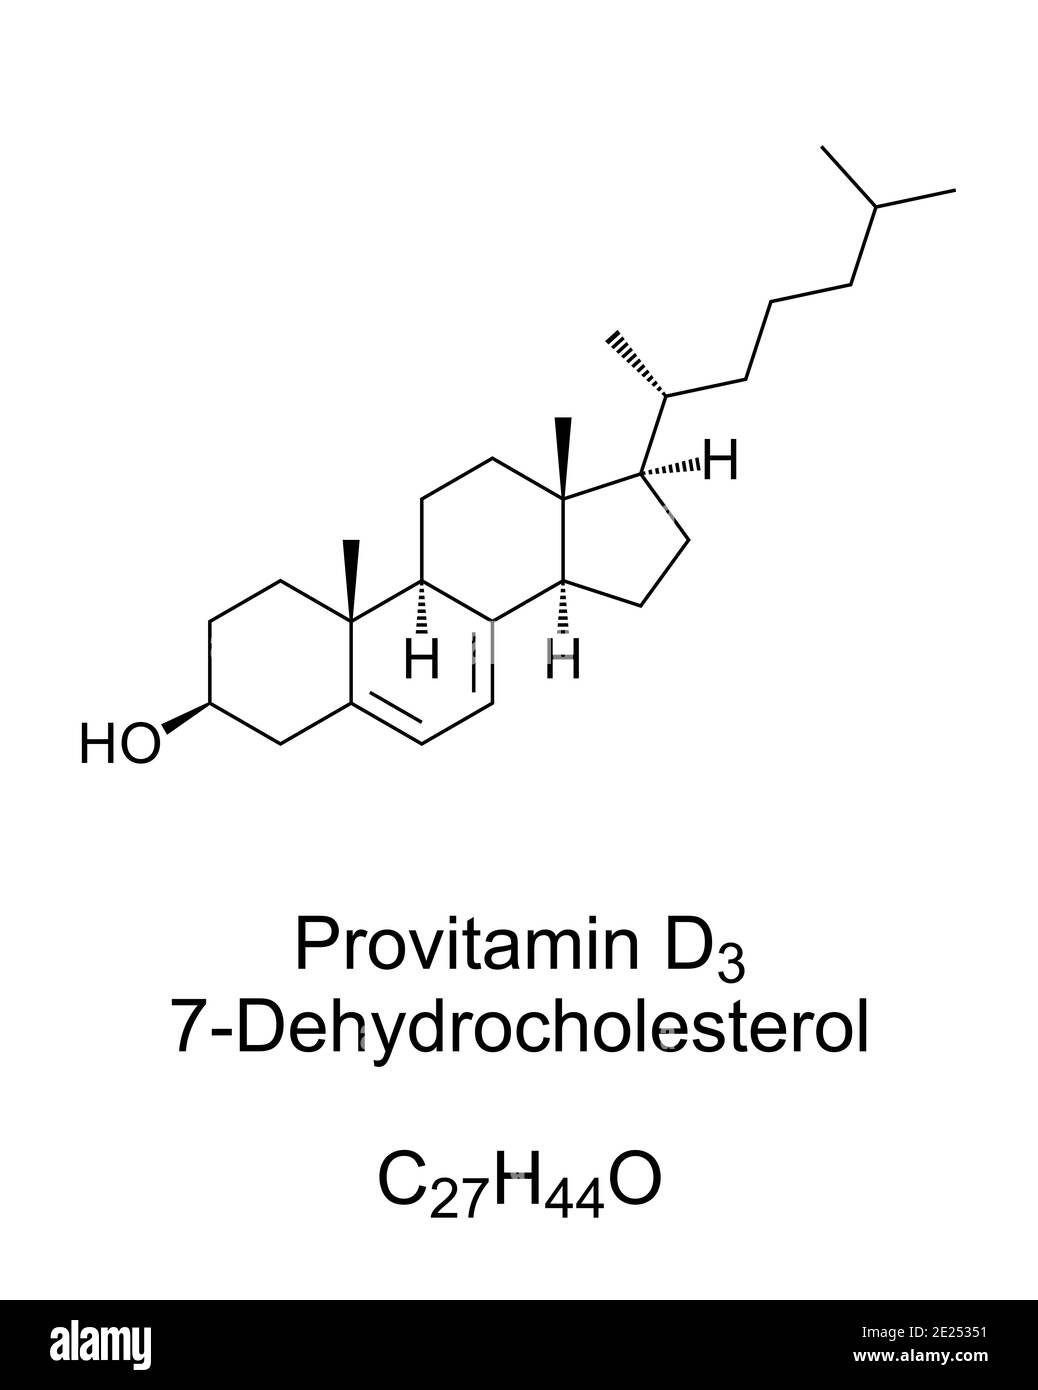 Forme de provitamine D3, structure chimique et formule squelettique. 7-déhydrocholestérol, 7-DHC. Zoosterol, fonctionne comme précurseur de cholestérol. Banque D'Images